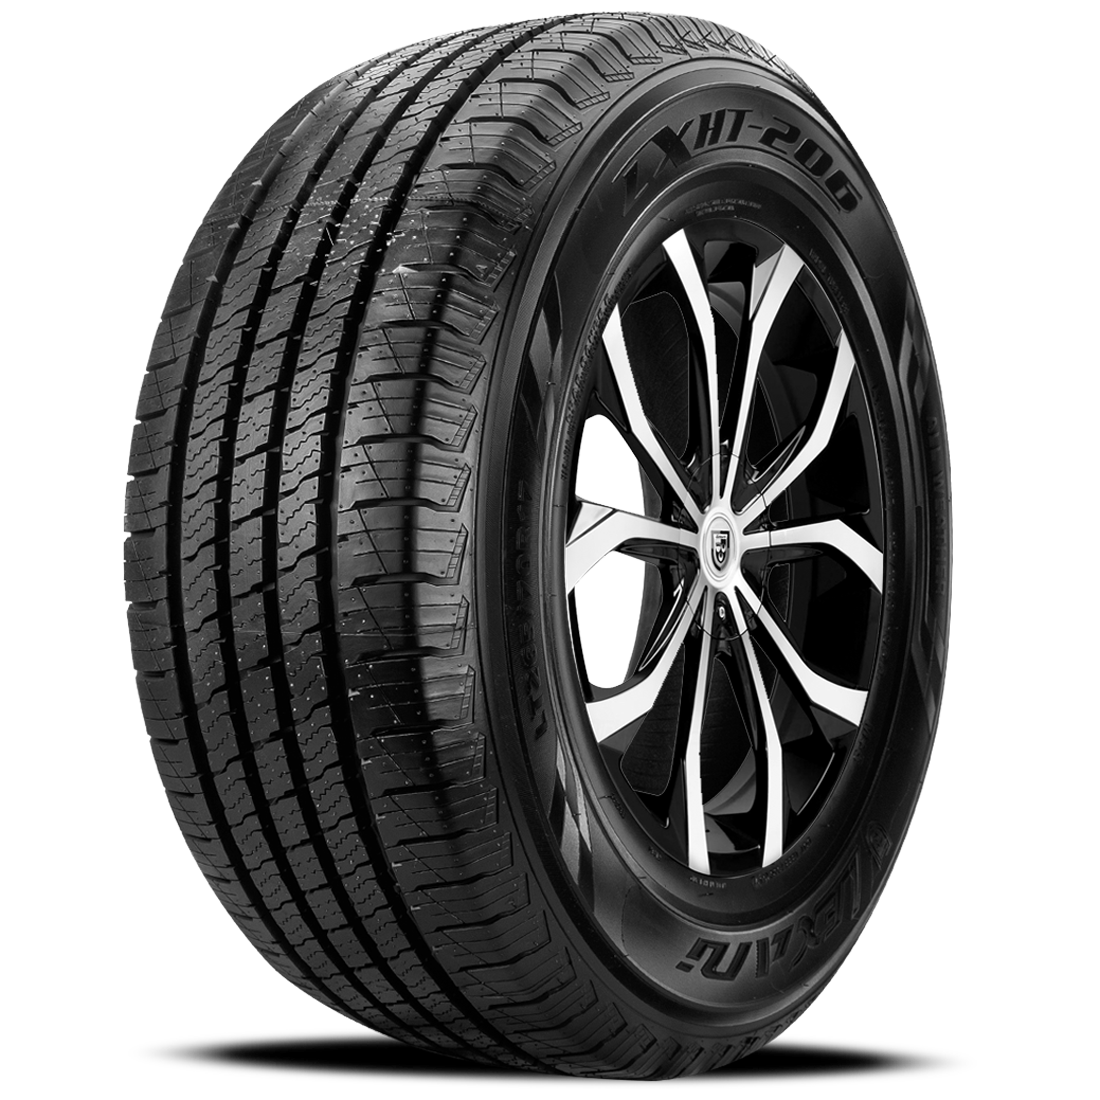 LEXANI LXHT-206 P235/65R18 (30X9.3R 18) Tires